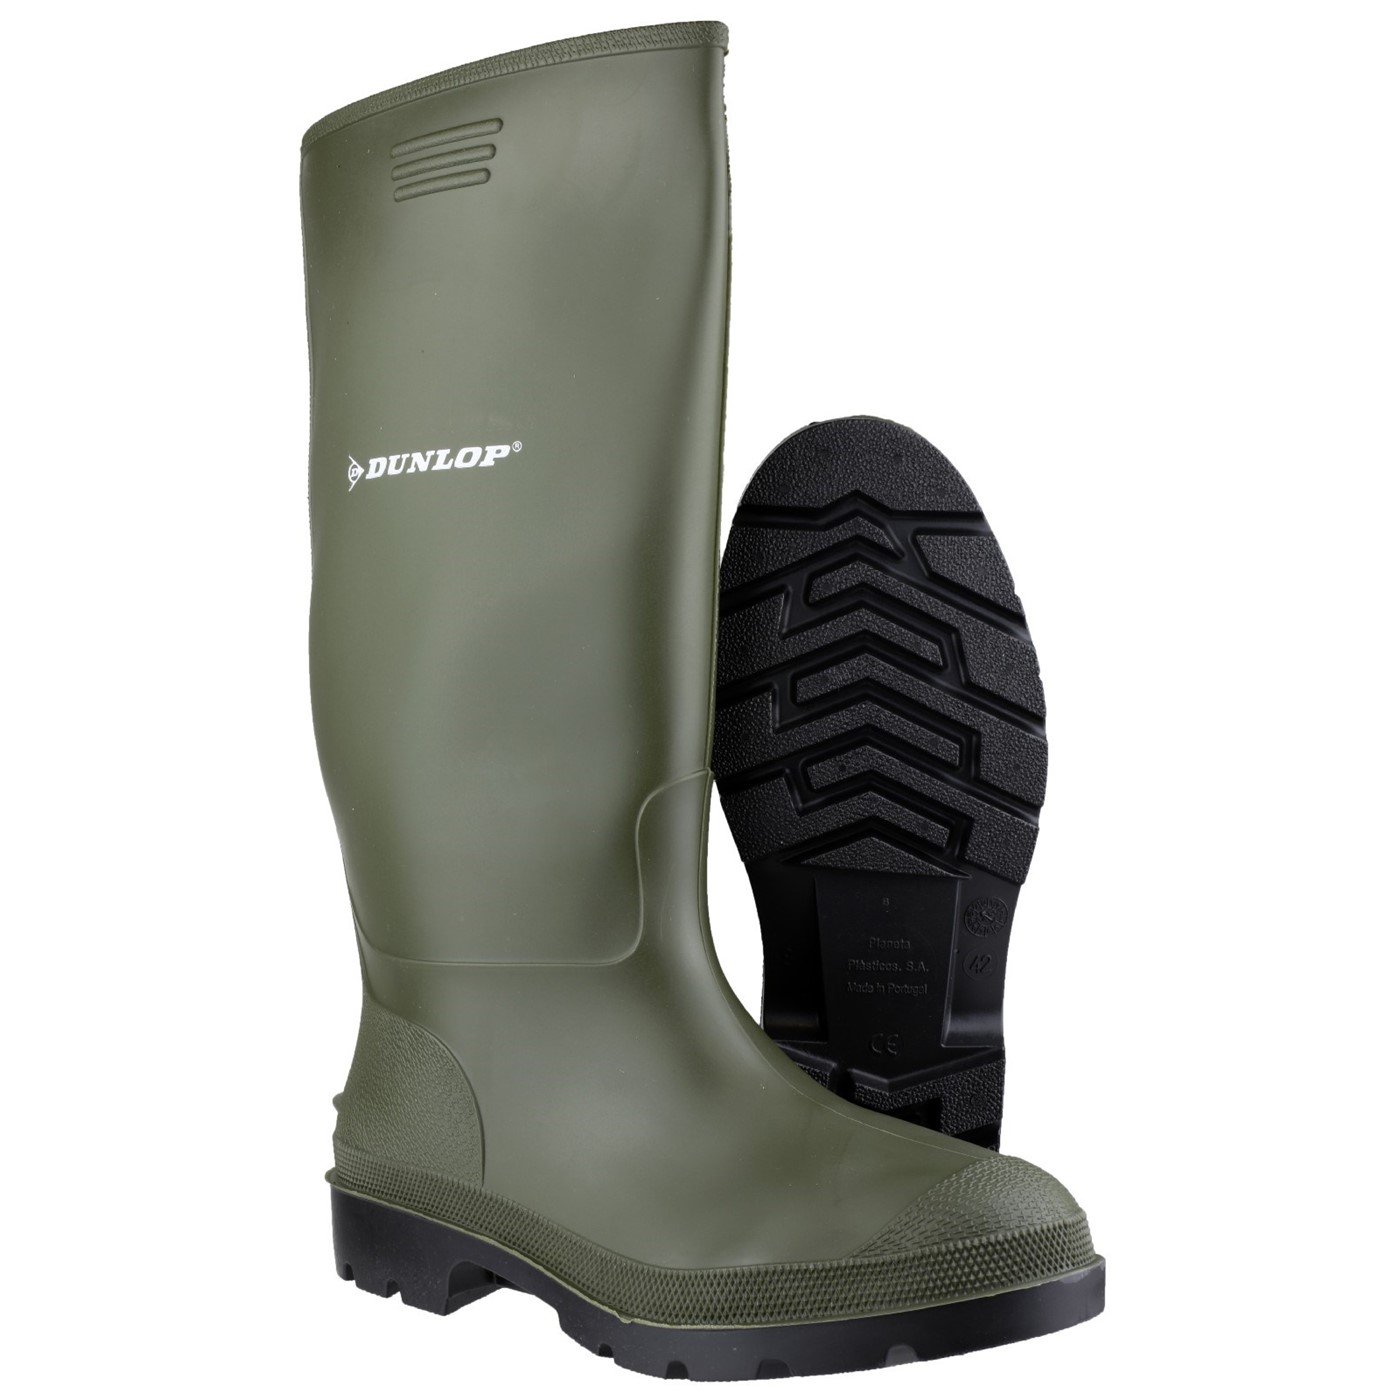 Dunlop Pricemaster Boot, Green, Size 10(44)